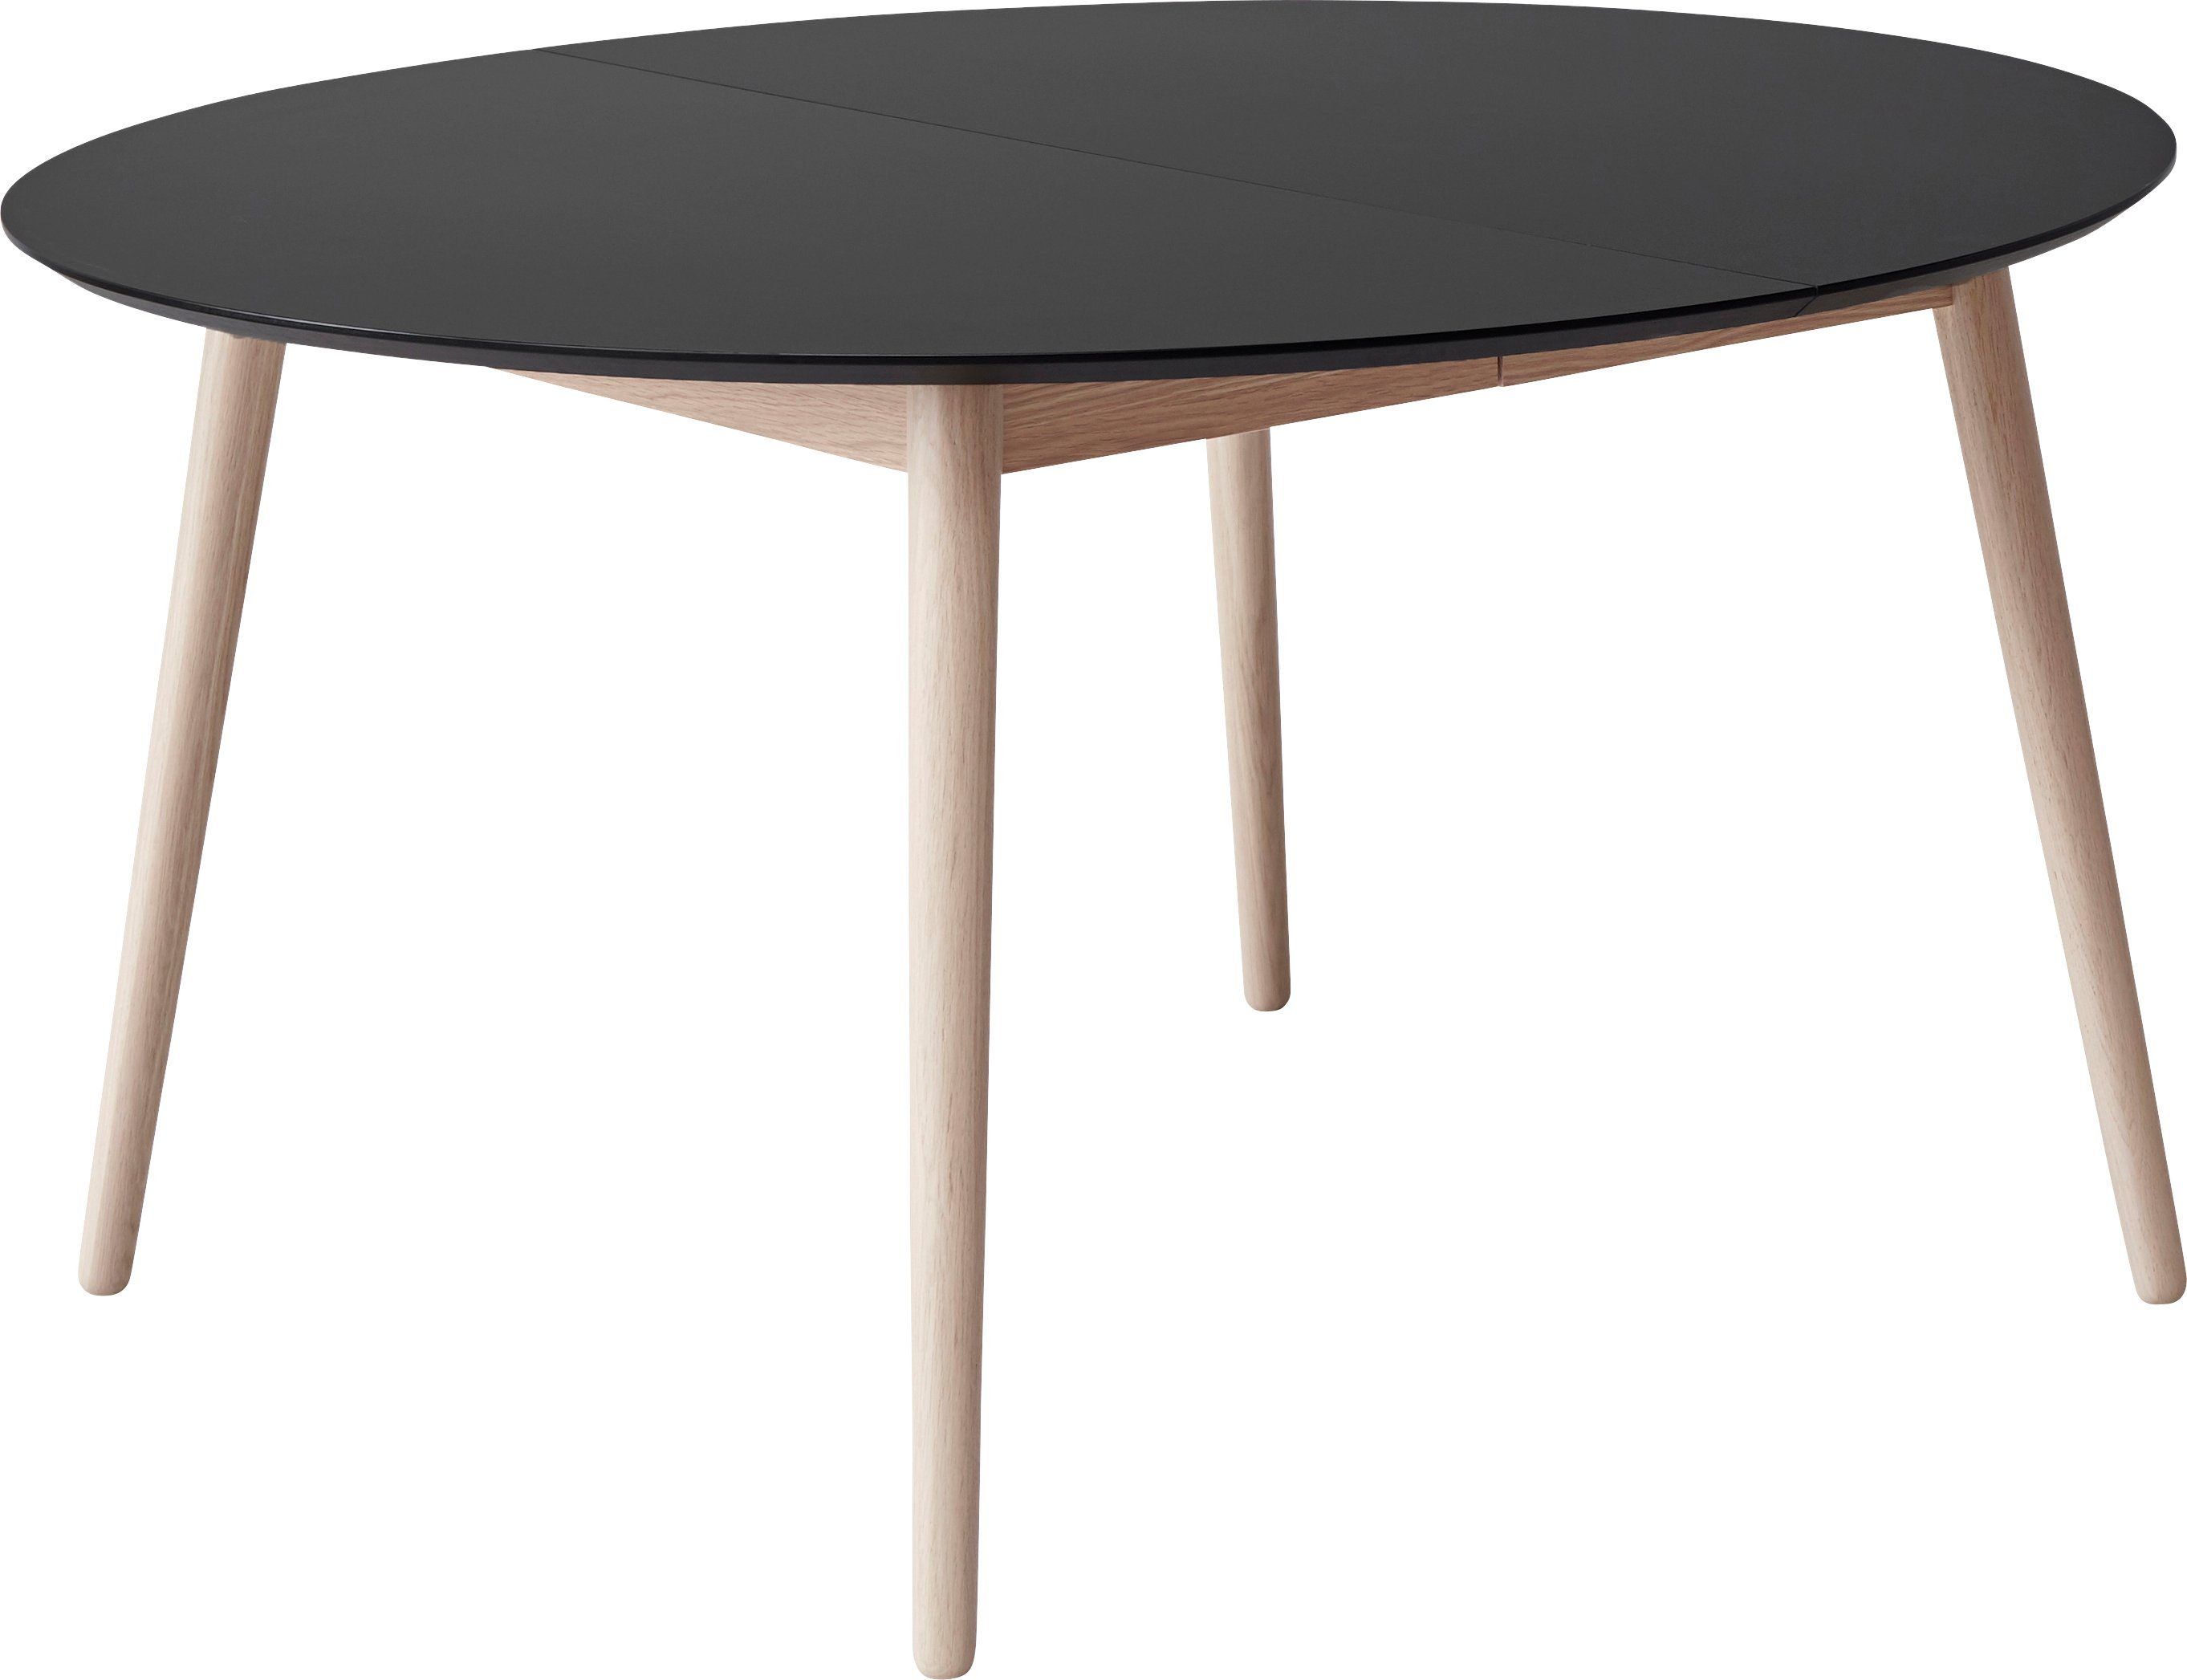 Angebot anführen Hammel Furniture MDF/Laminat, runde Meza Ø135(231) by aus Tischplatte Hammel, Massivholzgestell cm, Esstisch Schwarz